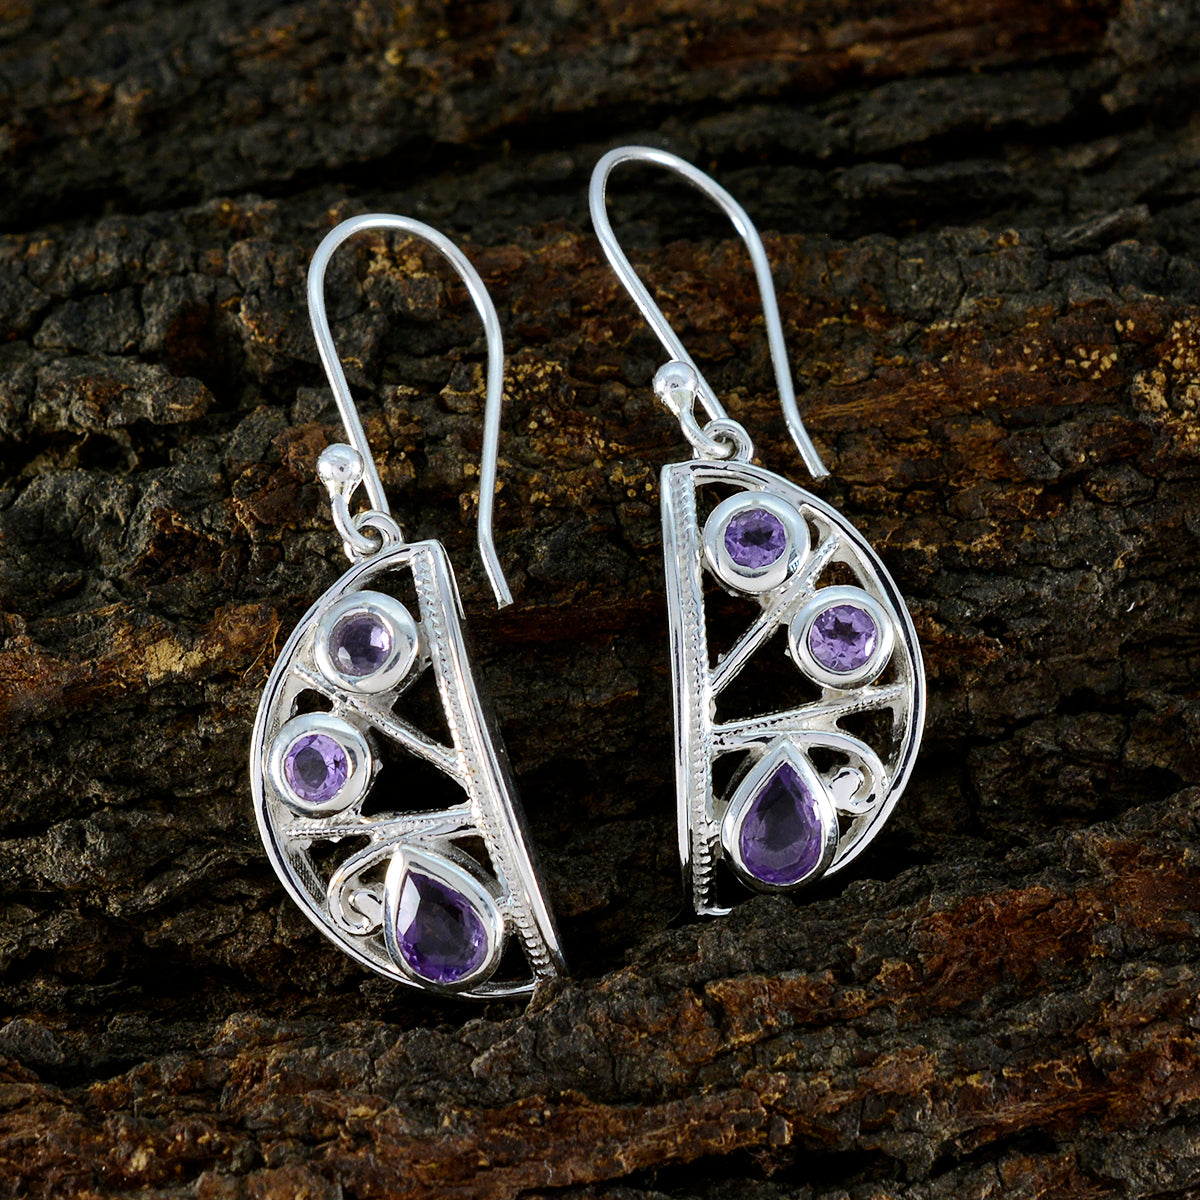 Riyo Exquisite Sterling Silver Earring For Demoiselle Amethyst Earring Bezel Setting Purple Earring Dangle Earring